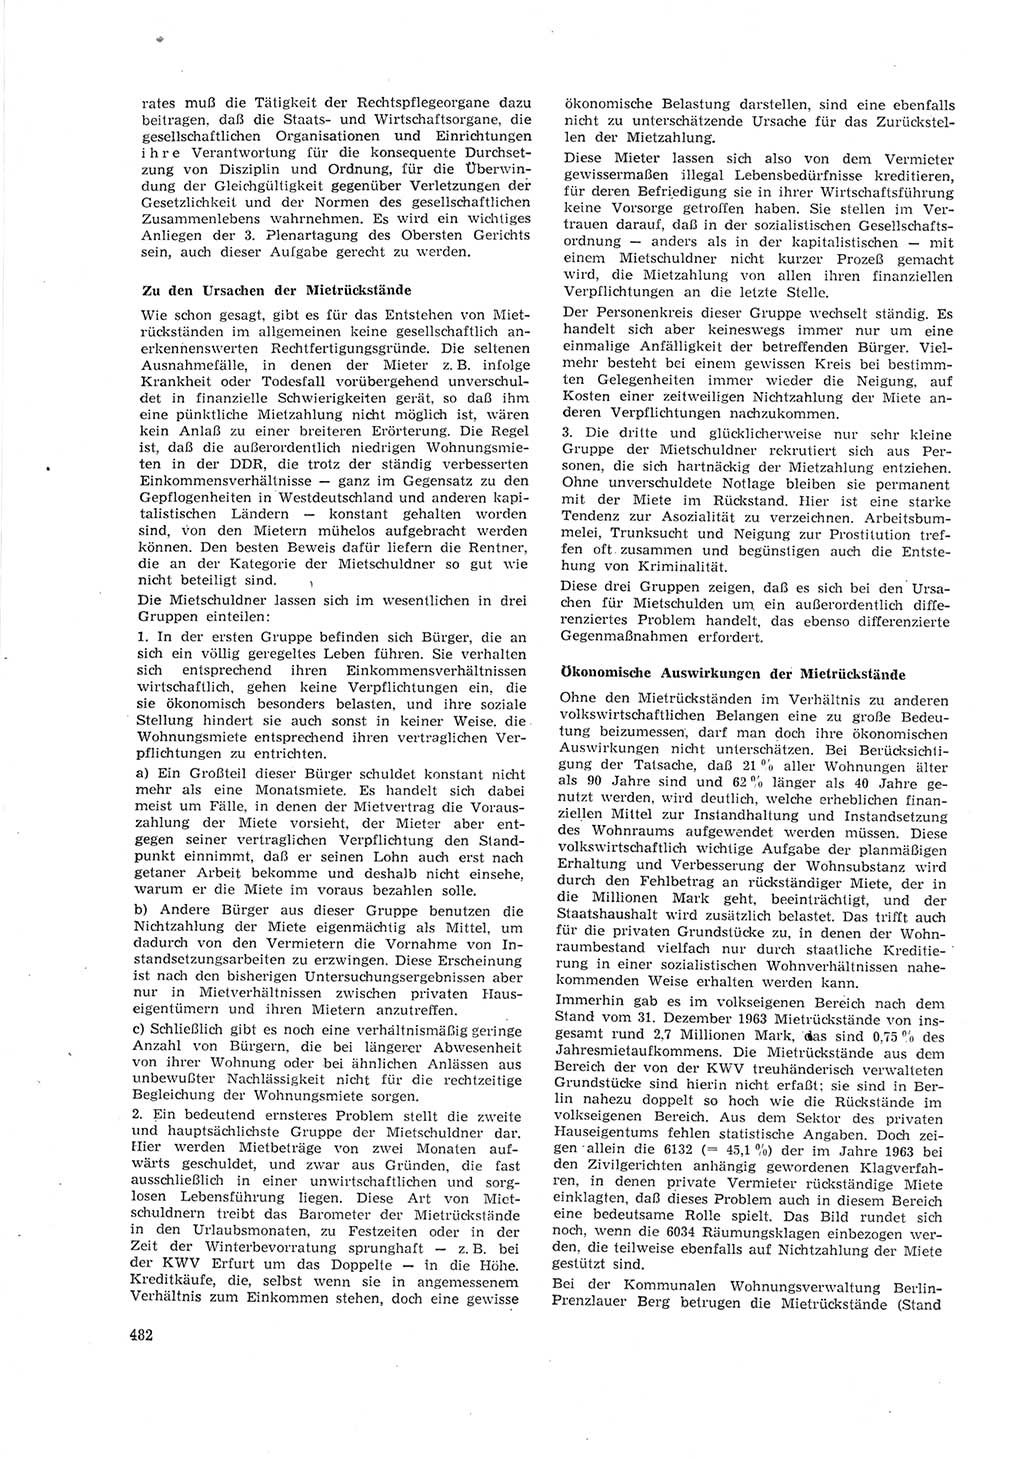 Neue Justiz (NJ), Zeitschrift für Recht und Rechtswissenschaft [Deutsche Demokratische Republik (DDR)], 18. Jahrgang 1964, Seite 482 (NJ DDR 1964, S. 482)